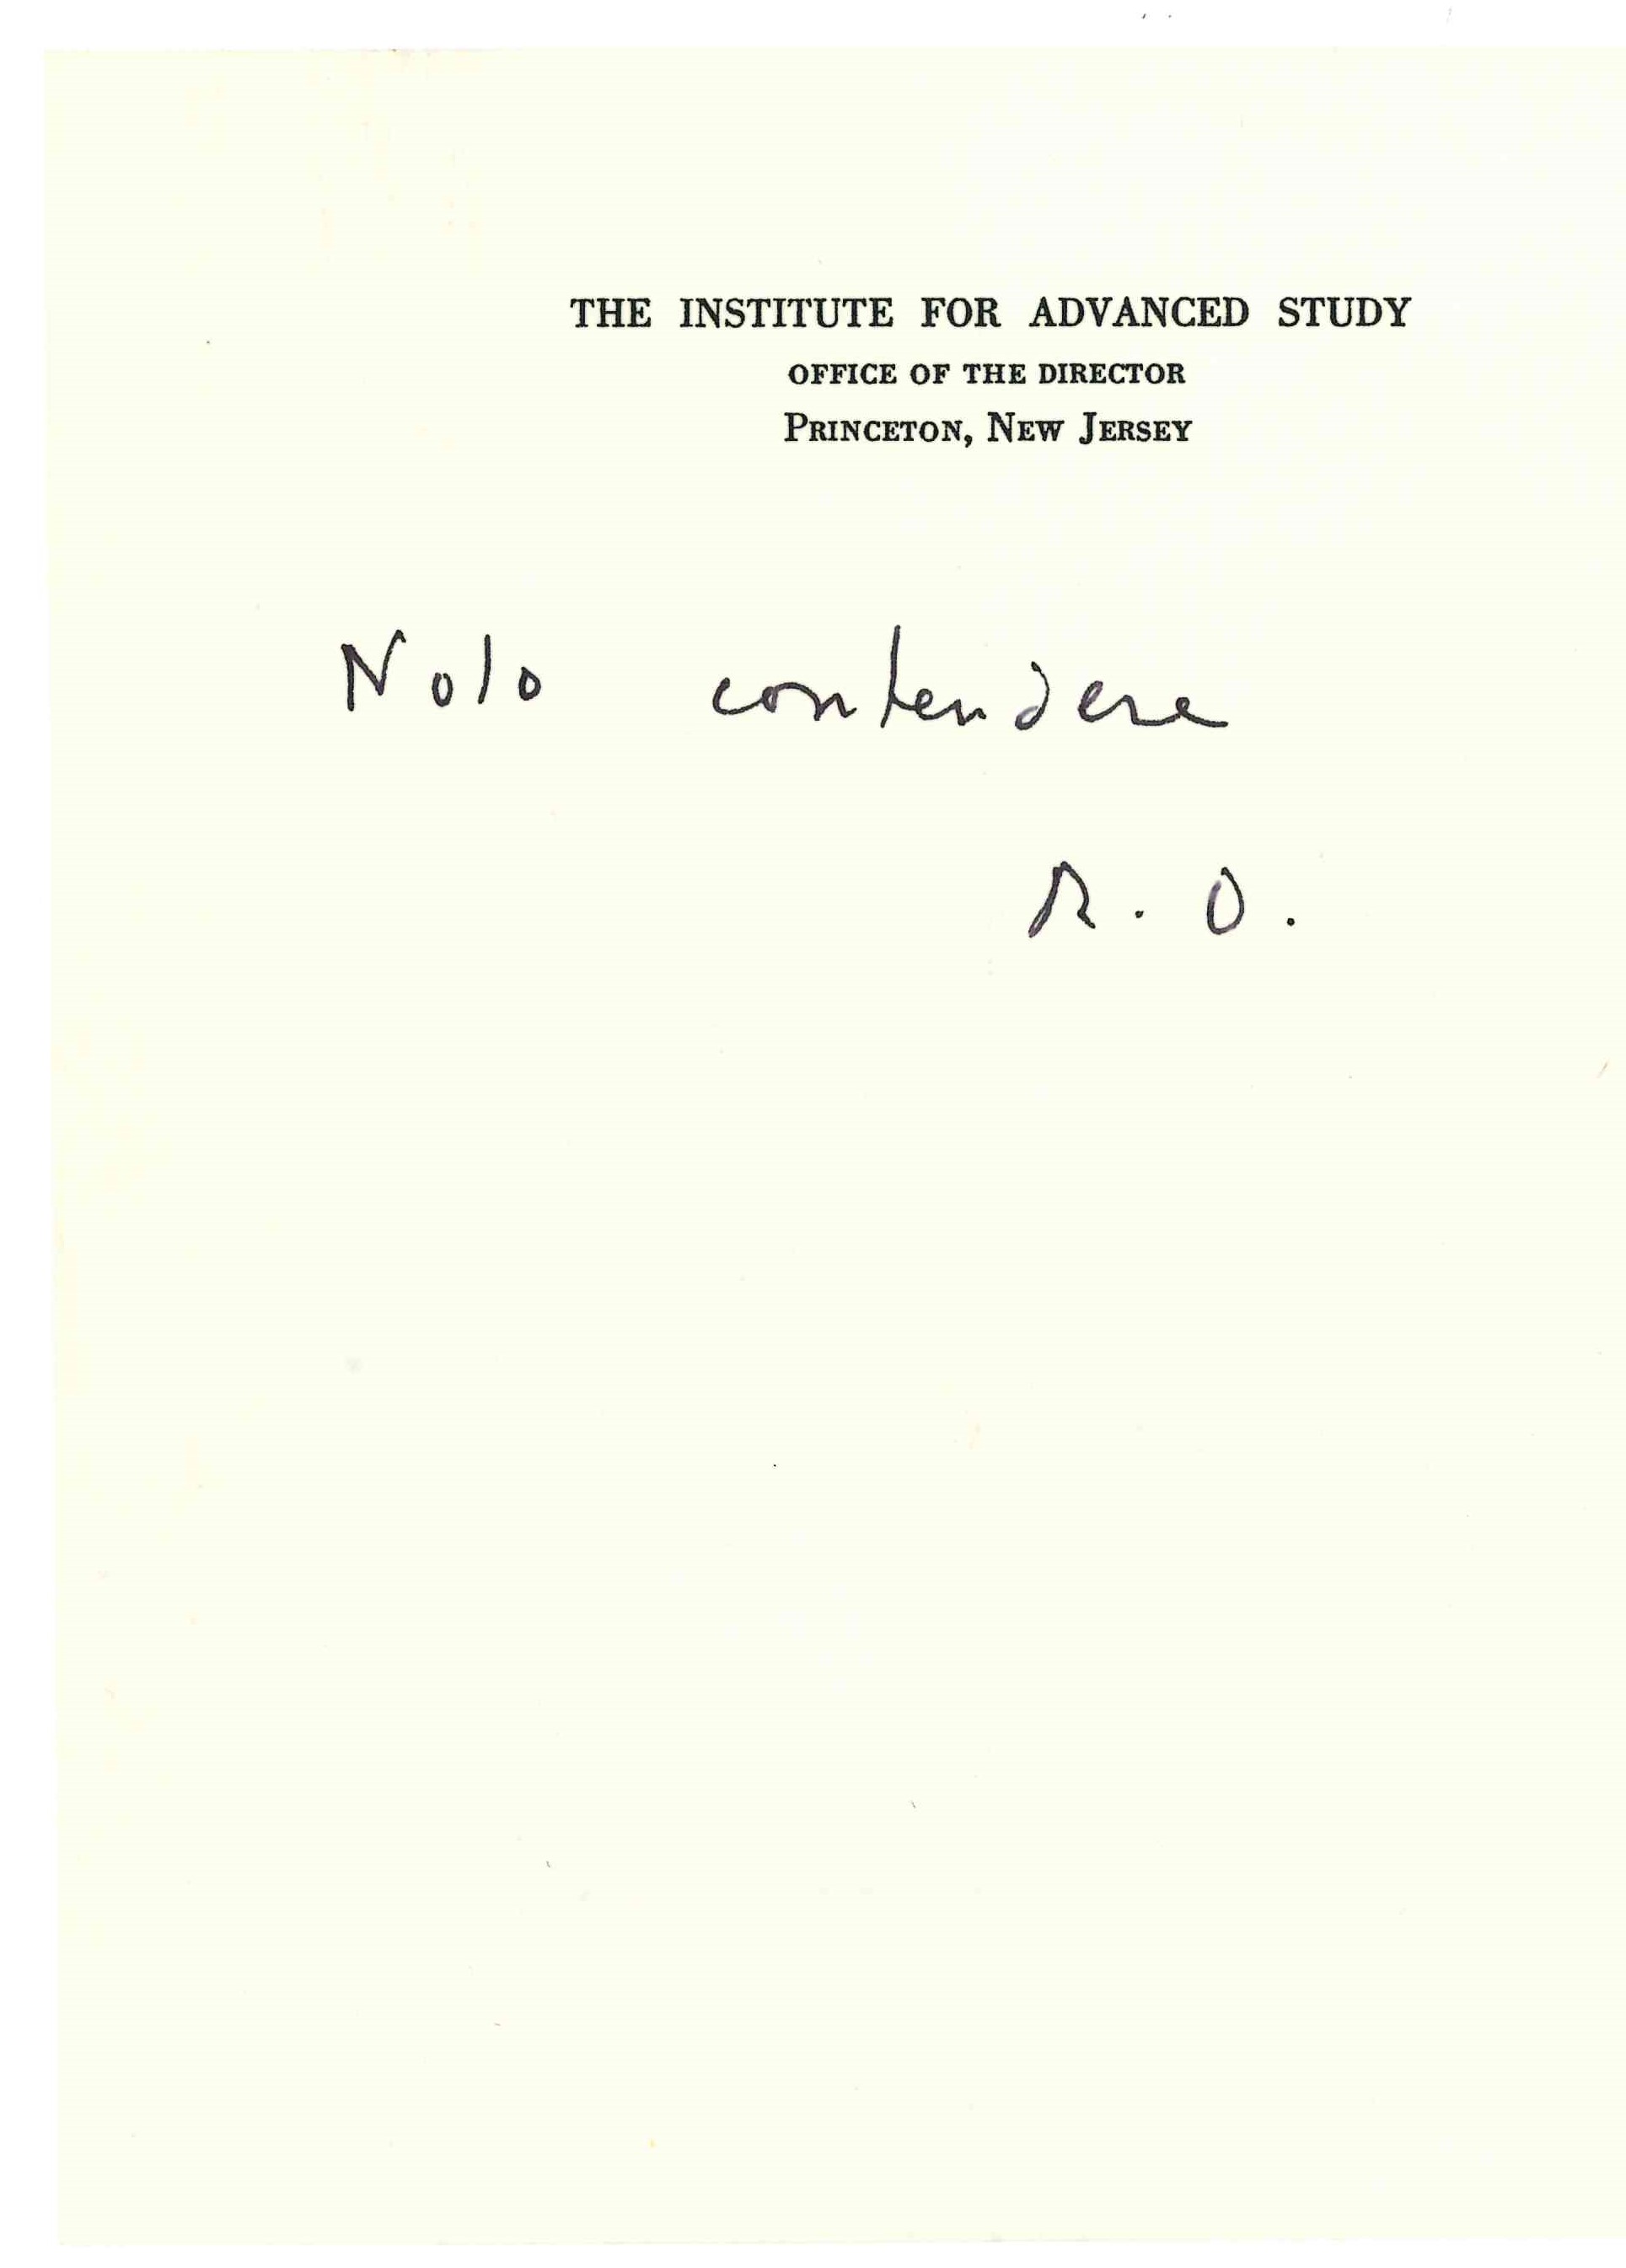 Oppenheimer note